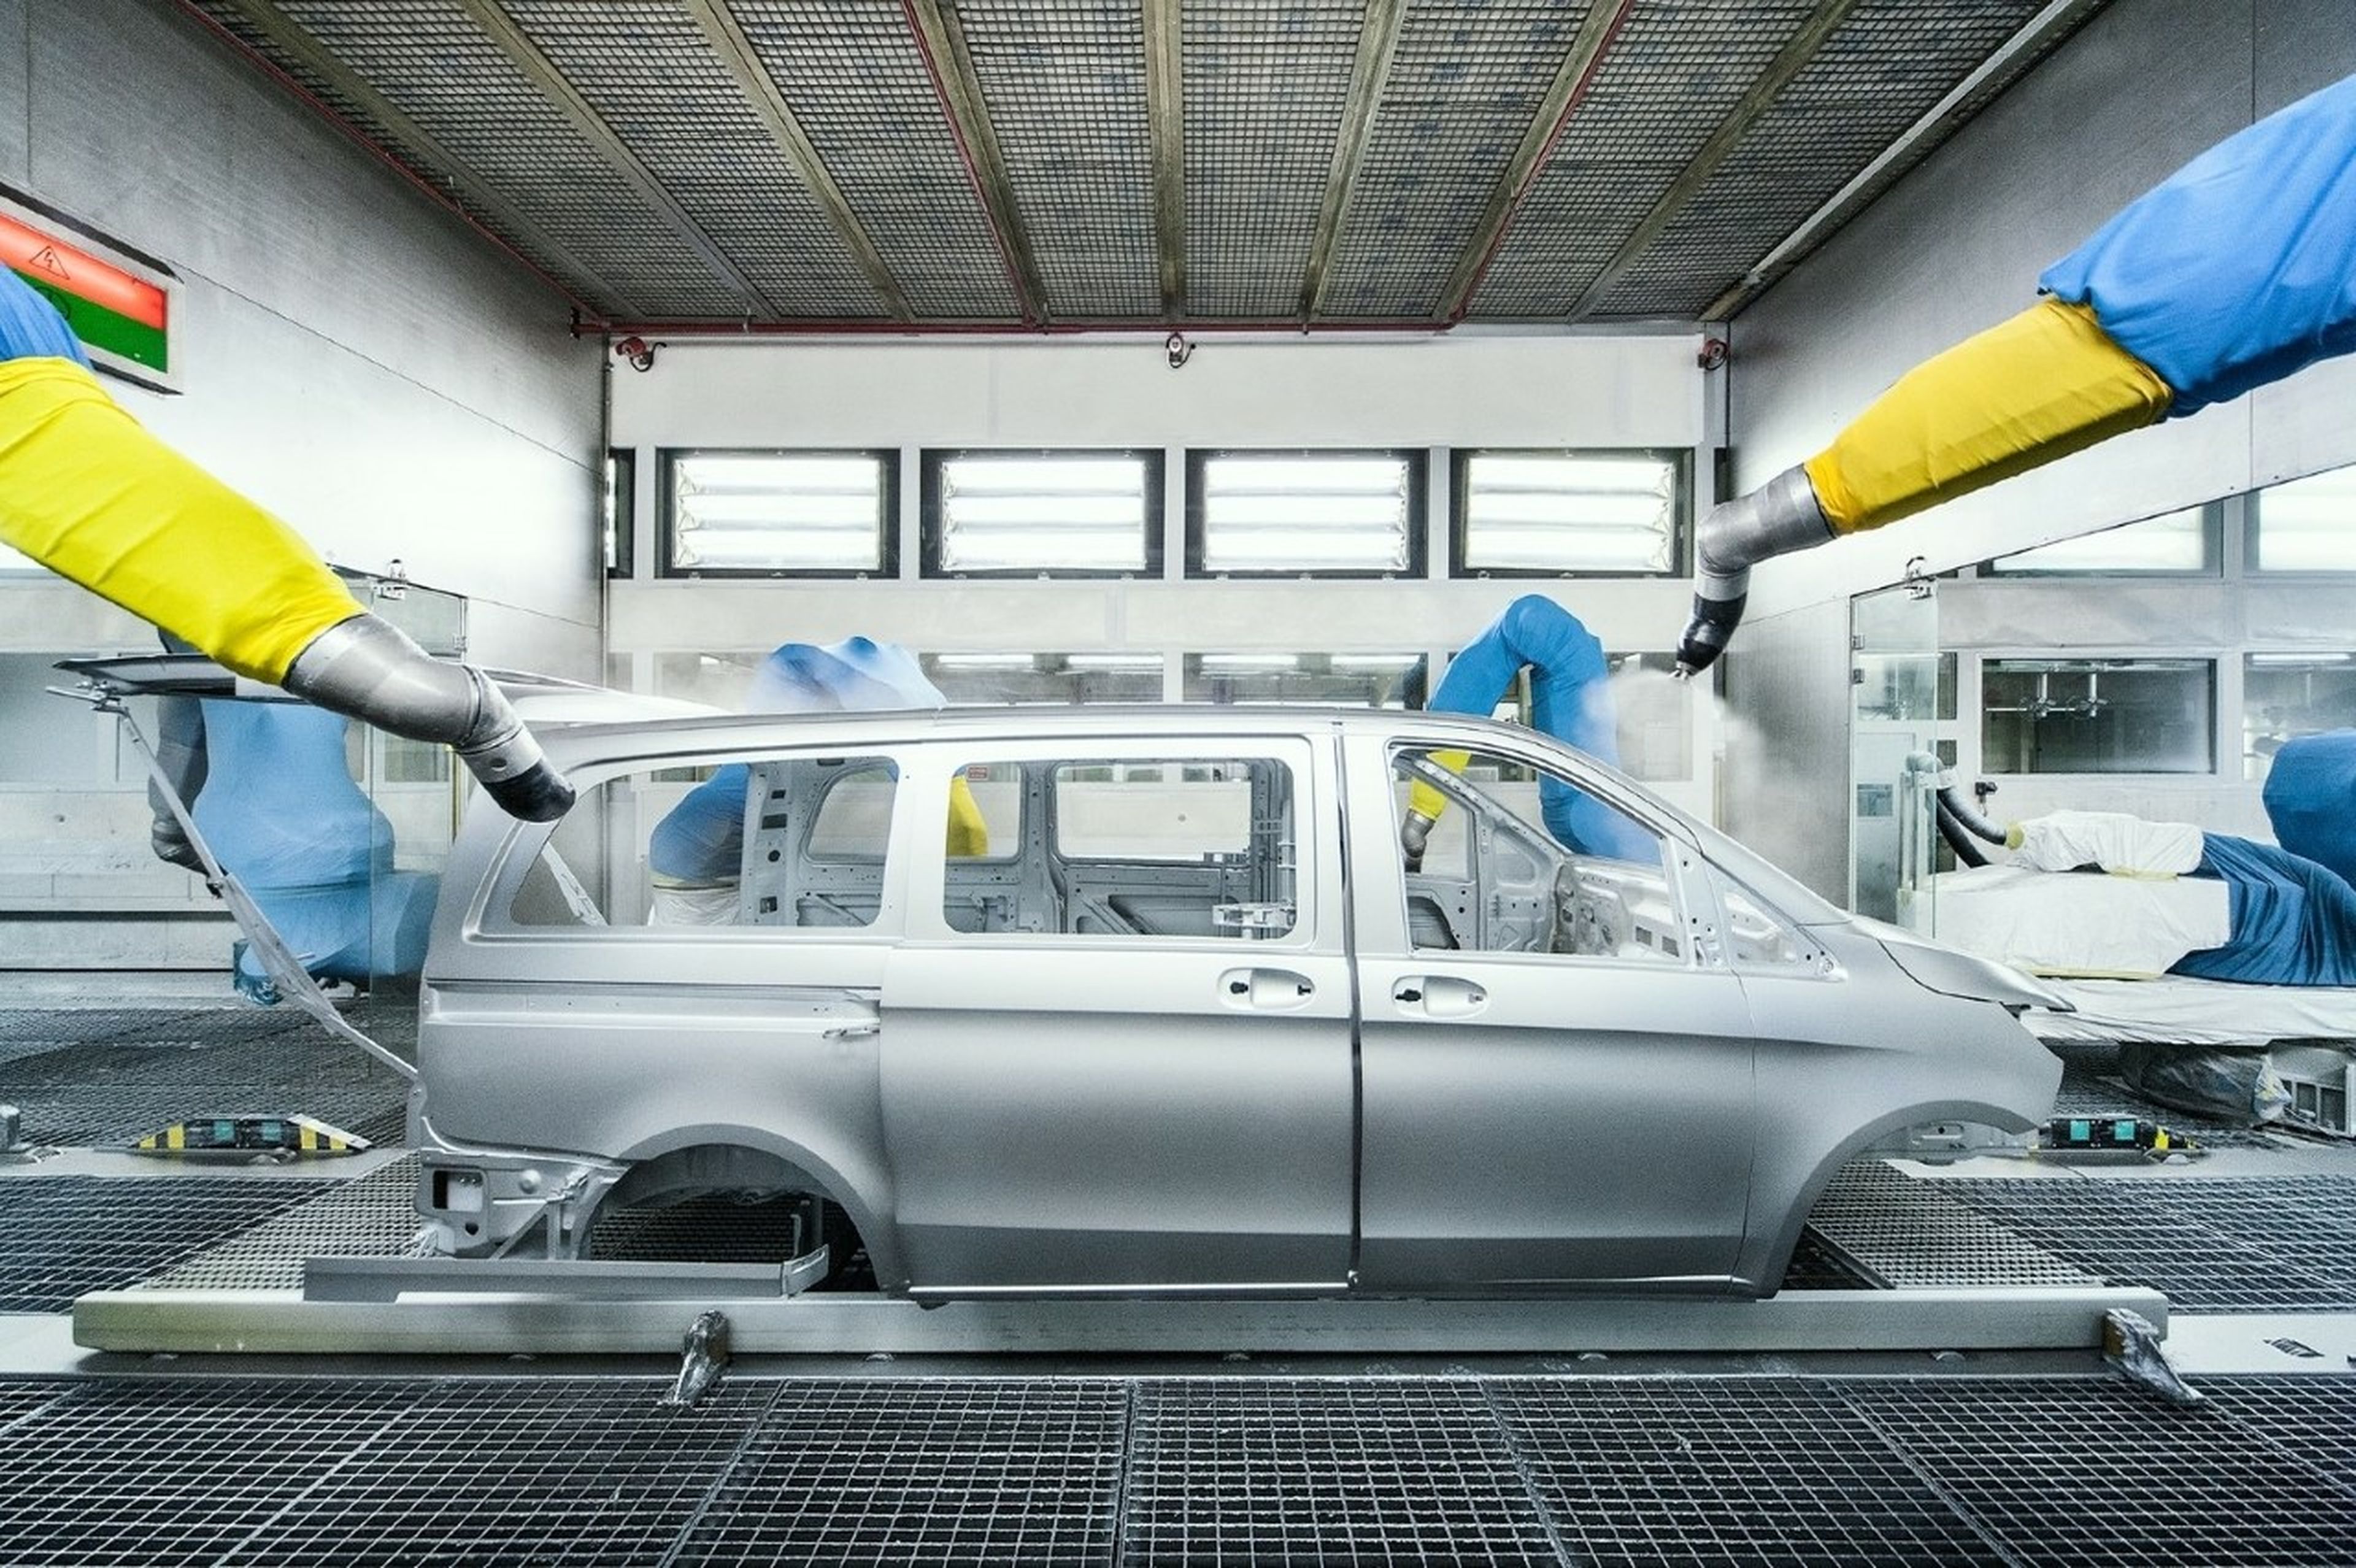 España fabricará un nuevo coche eléctrico en la planta de Mercedes en Vitoria